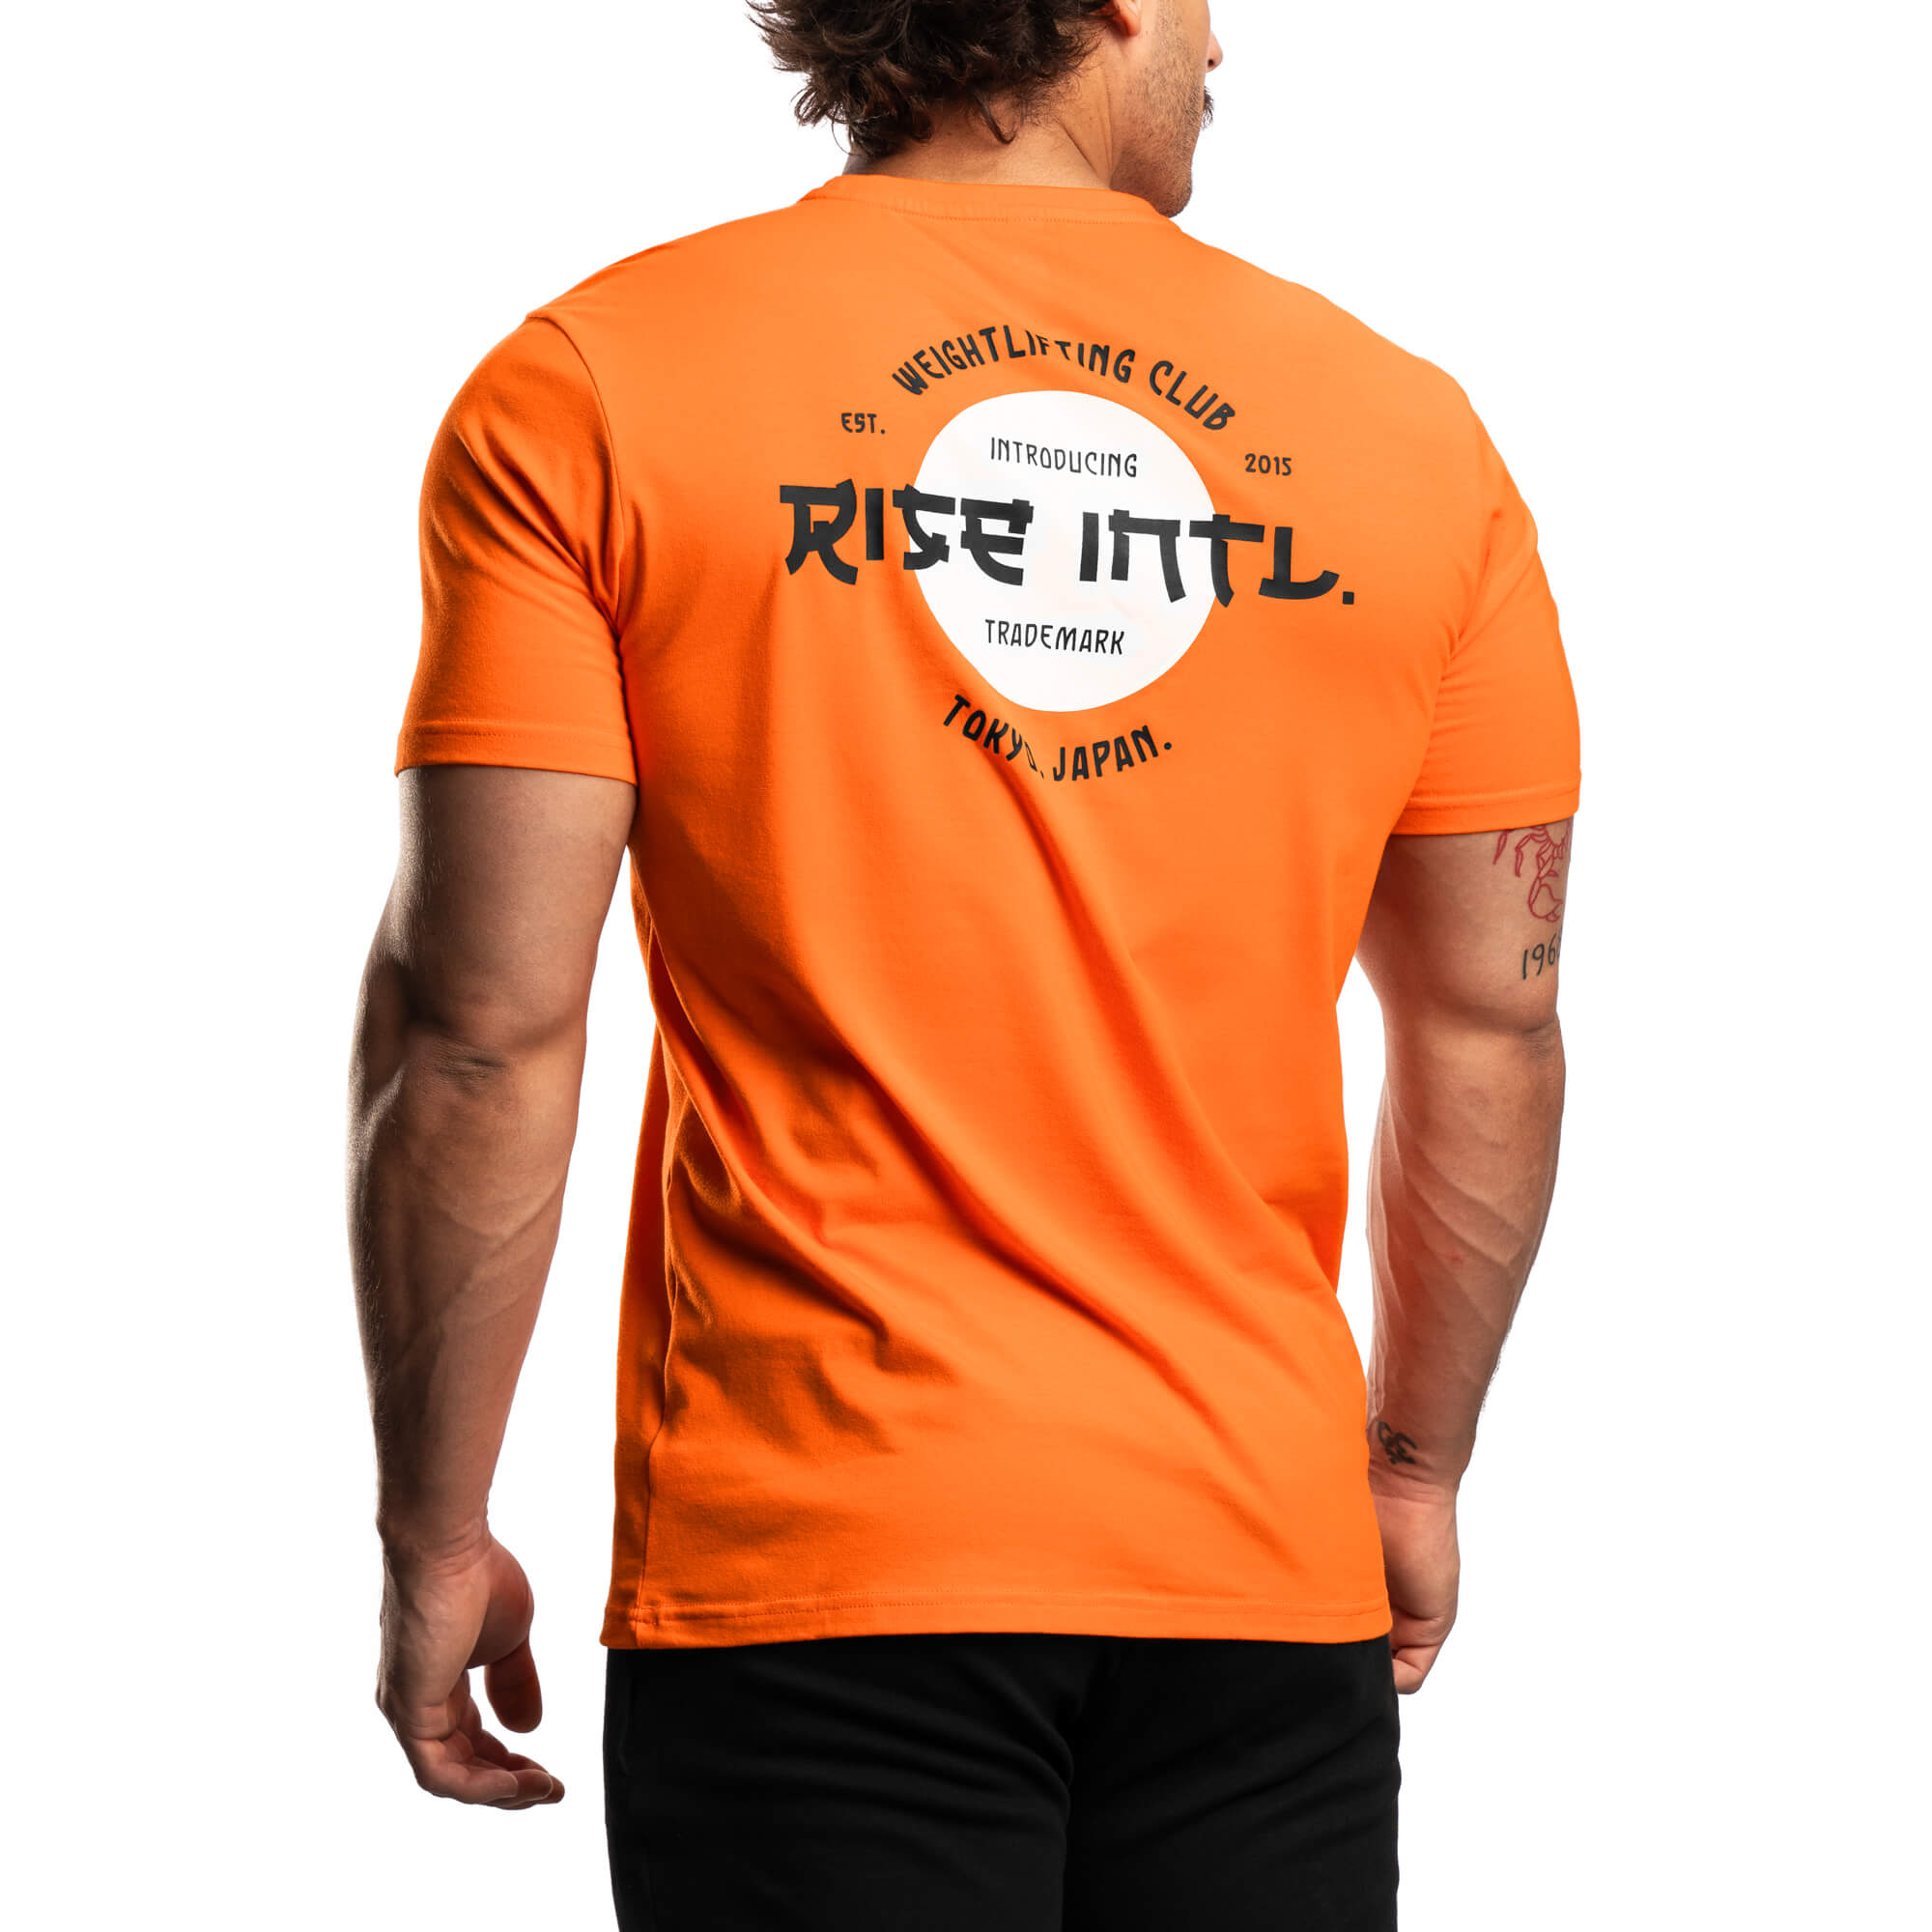 Japan Weightlifting Club Shirt - Orange